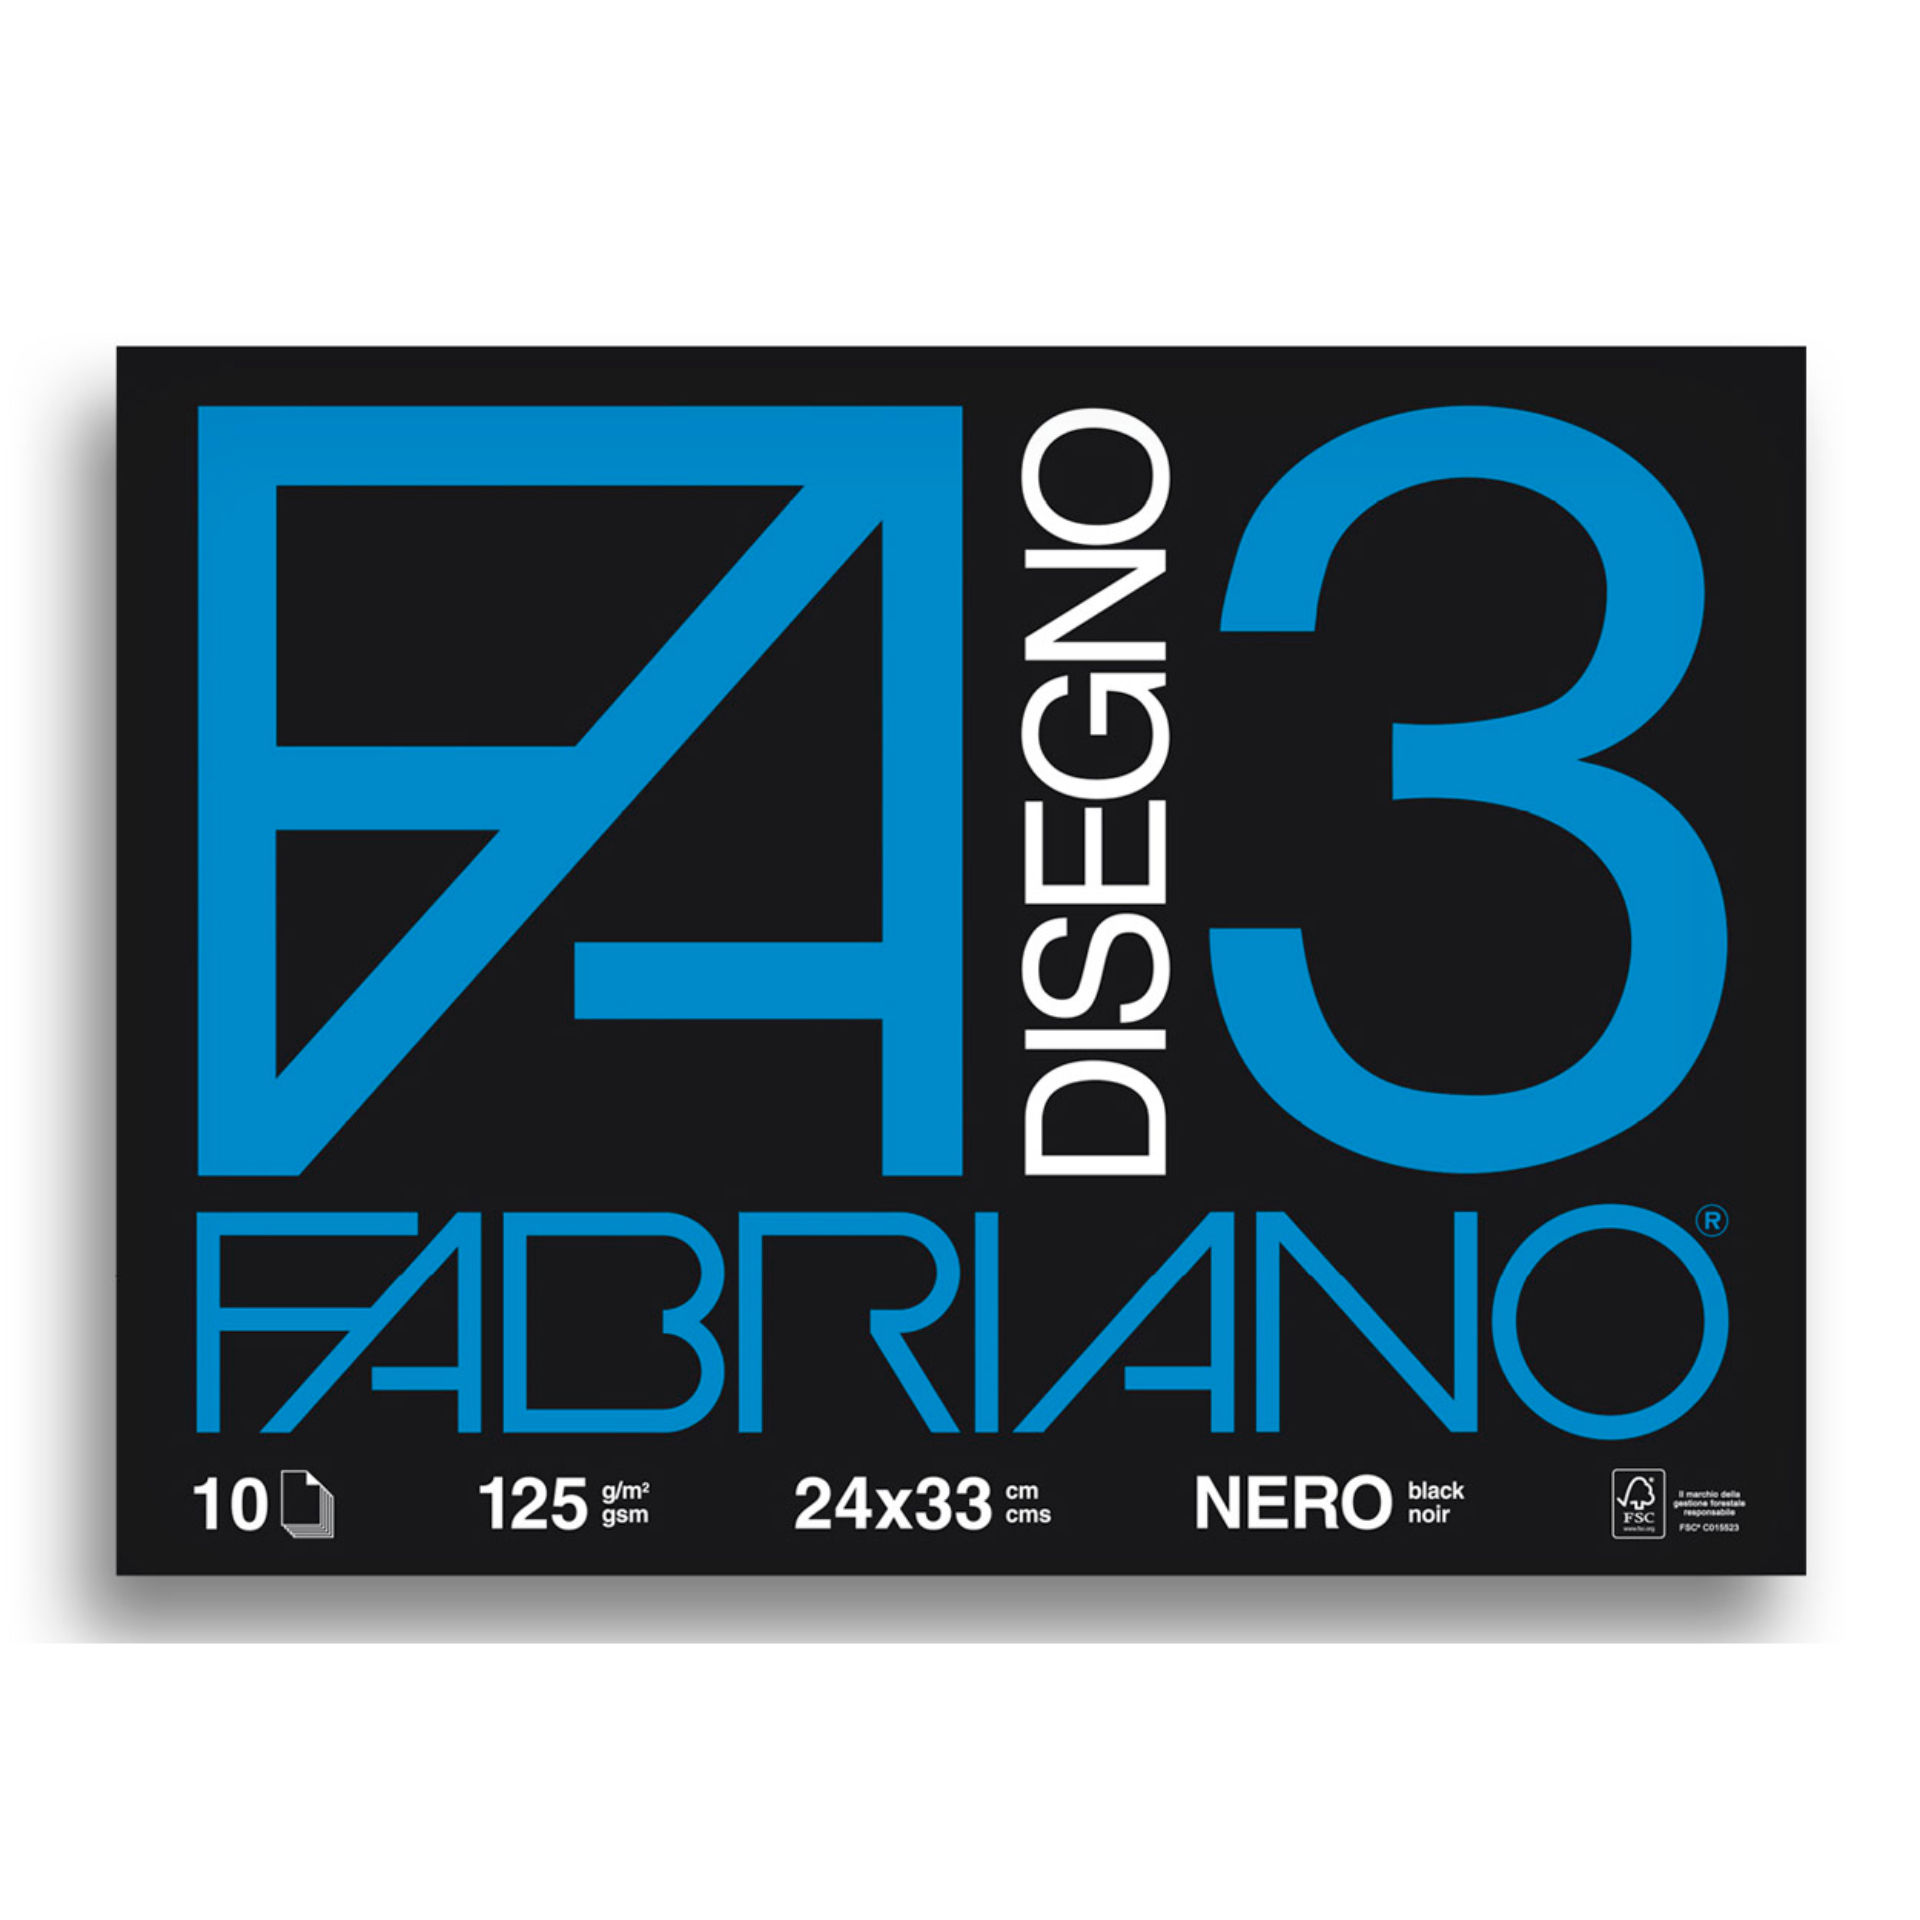 ALBUM FABRIANO F3 24X33 FG. 10 NERO GR. 125Fabriano